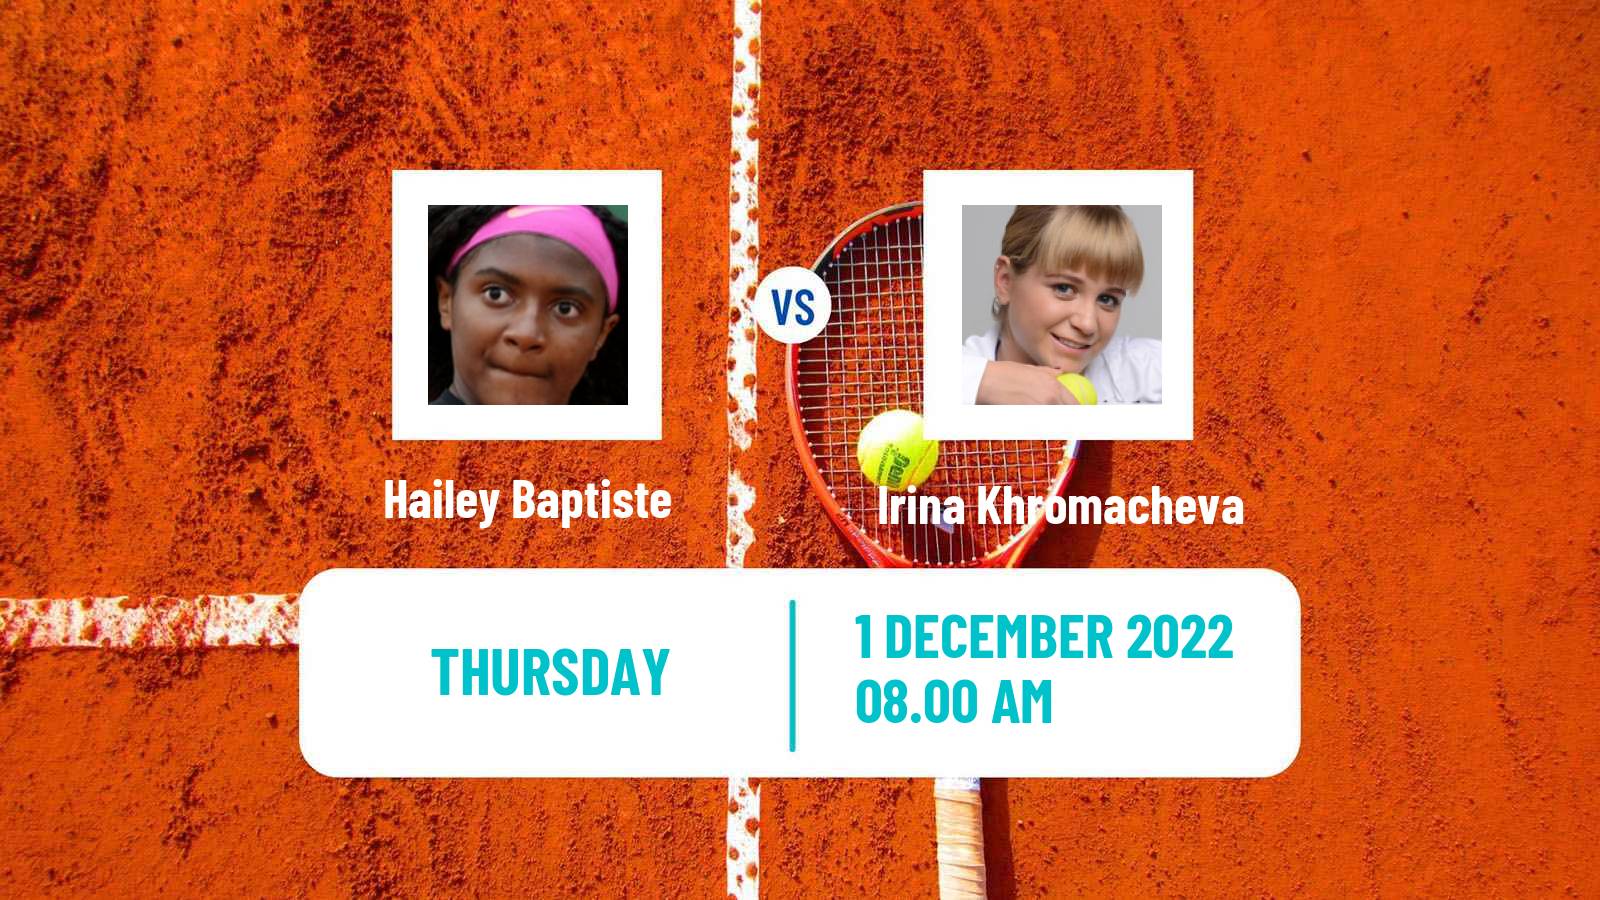 Tennis ITF Tournaments Hailey Baptiste - Irina Khromacheva